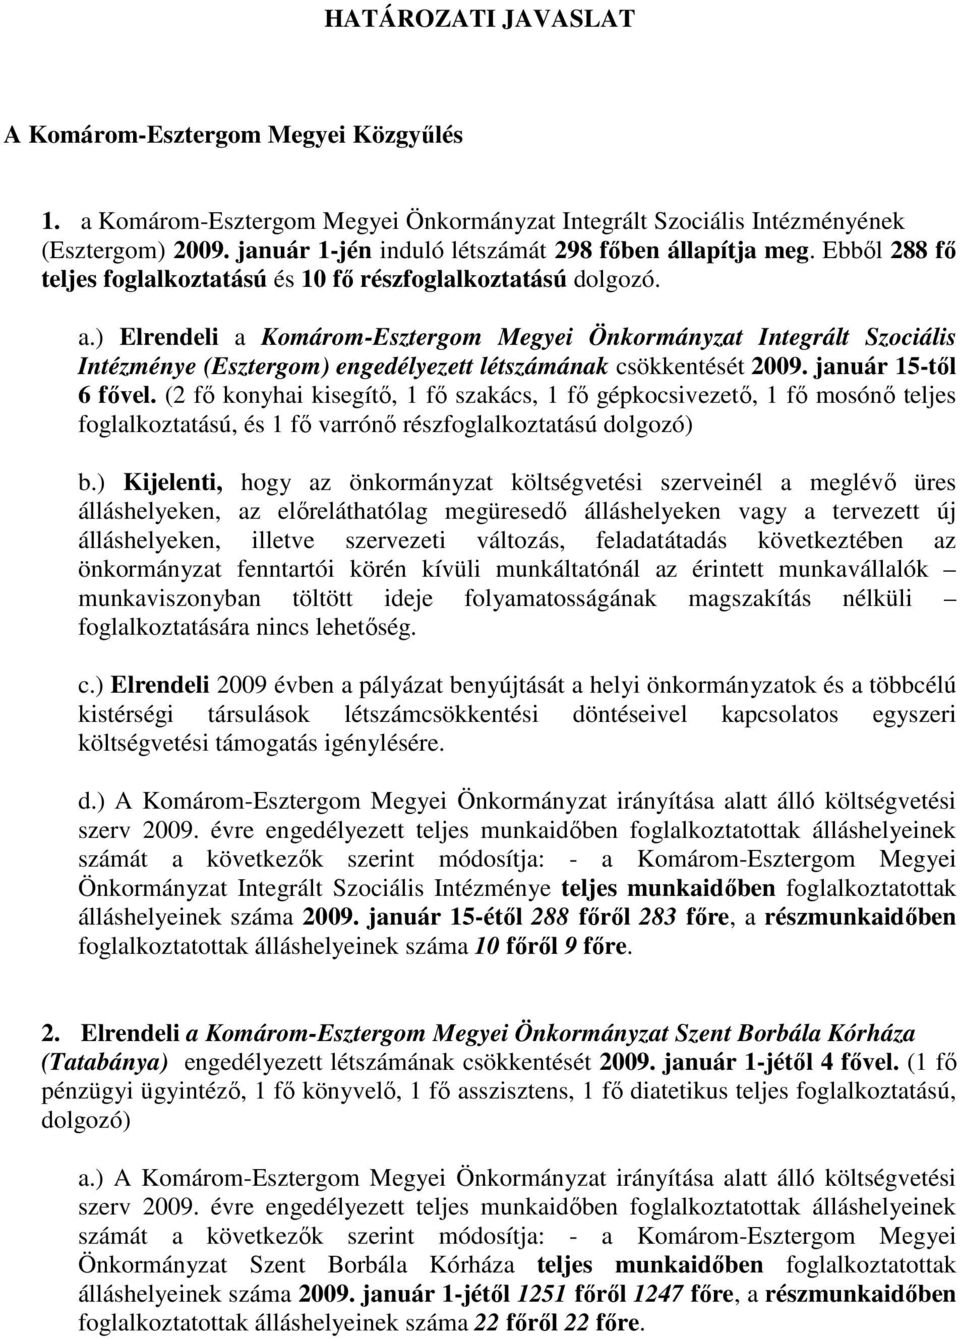 ) Elrendeli a Komárom-Esztergom Megyei Önkormányzat Integrált Szociális Intézménye (Esztergom) engedélyezett létszámának csökkentését 2009. január 15-tıl 6 fıvel.